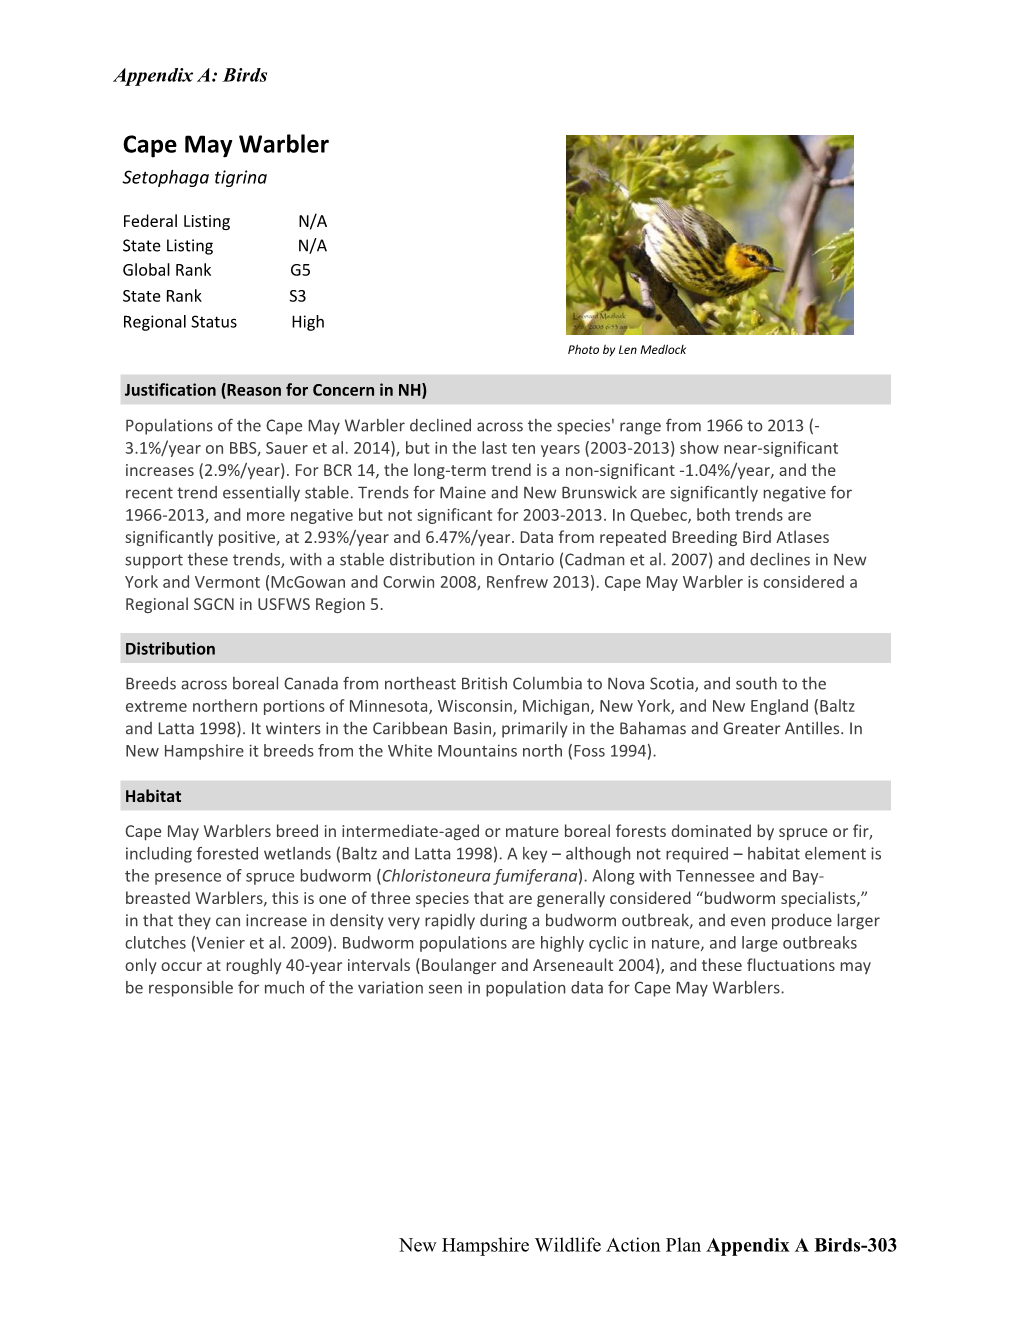 Cape May Warbler Setophaga Tigrina